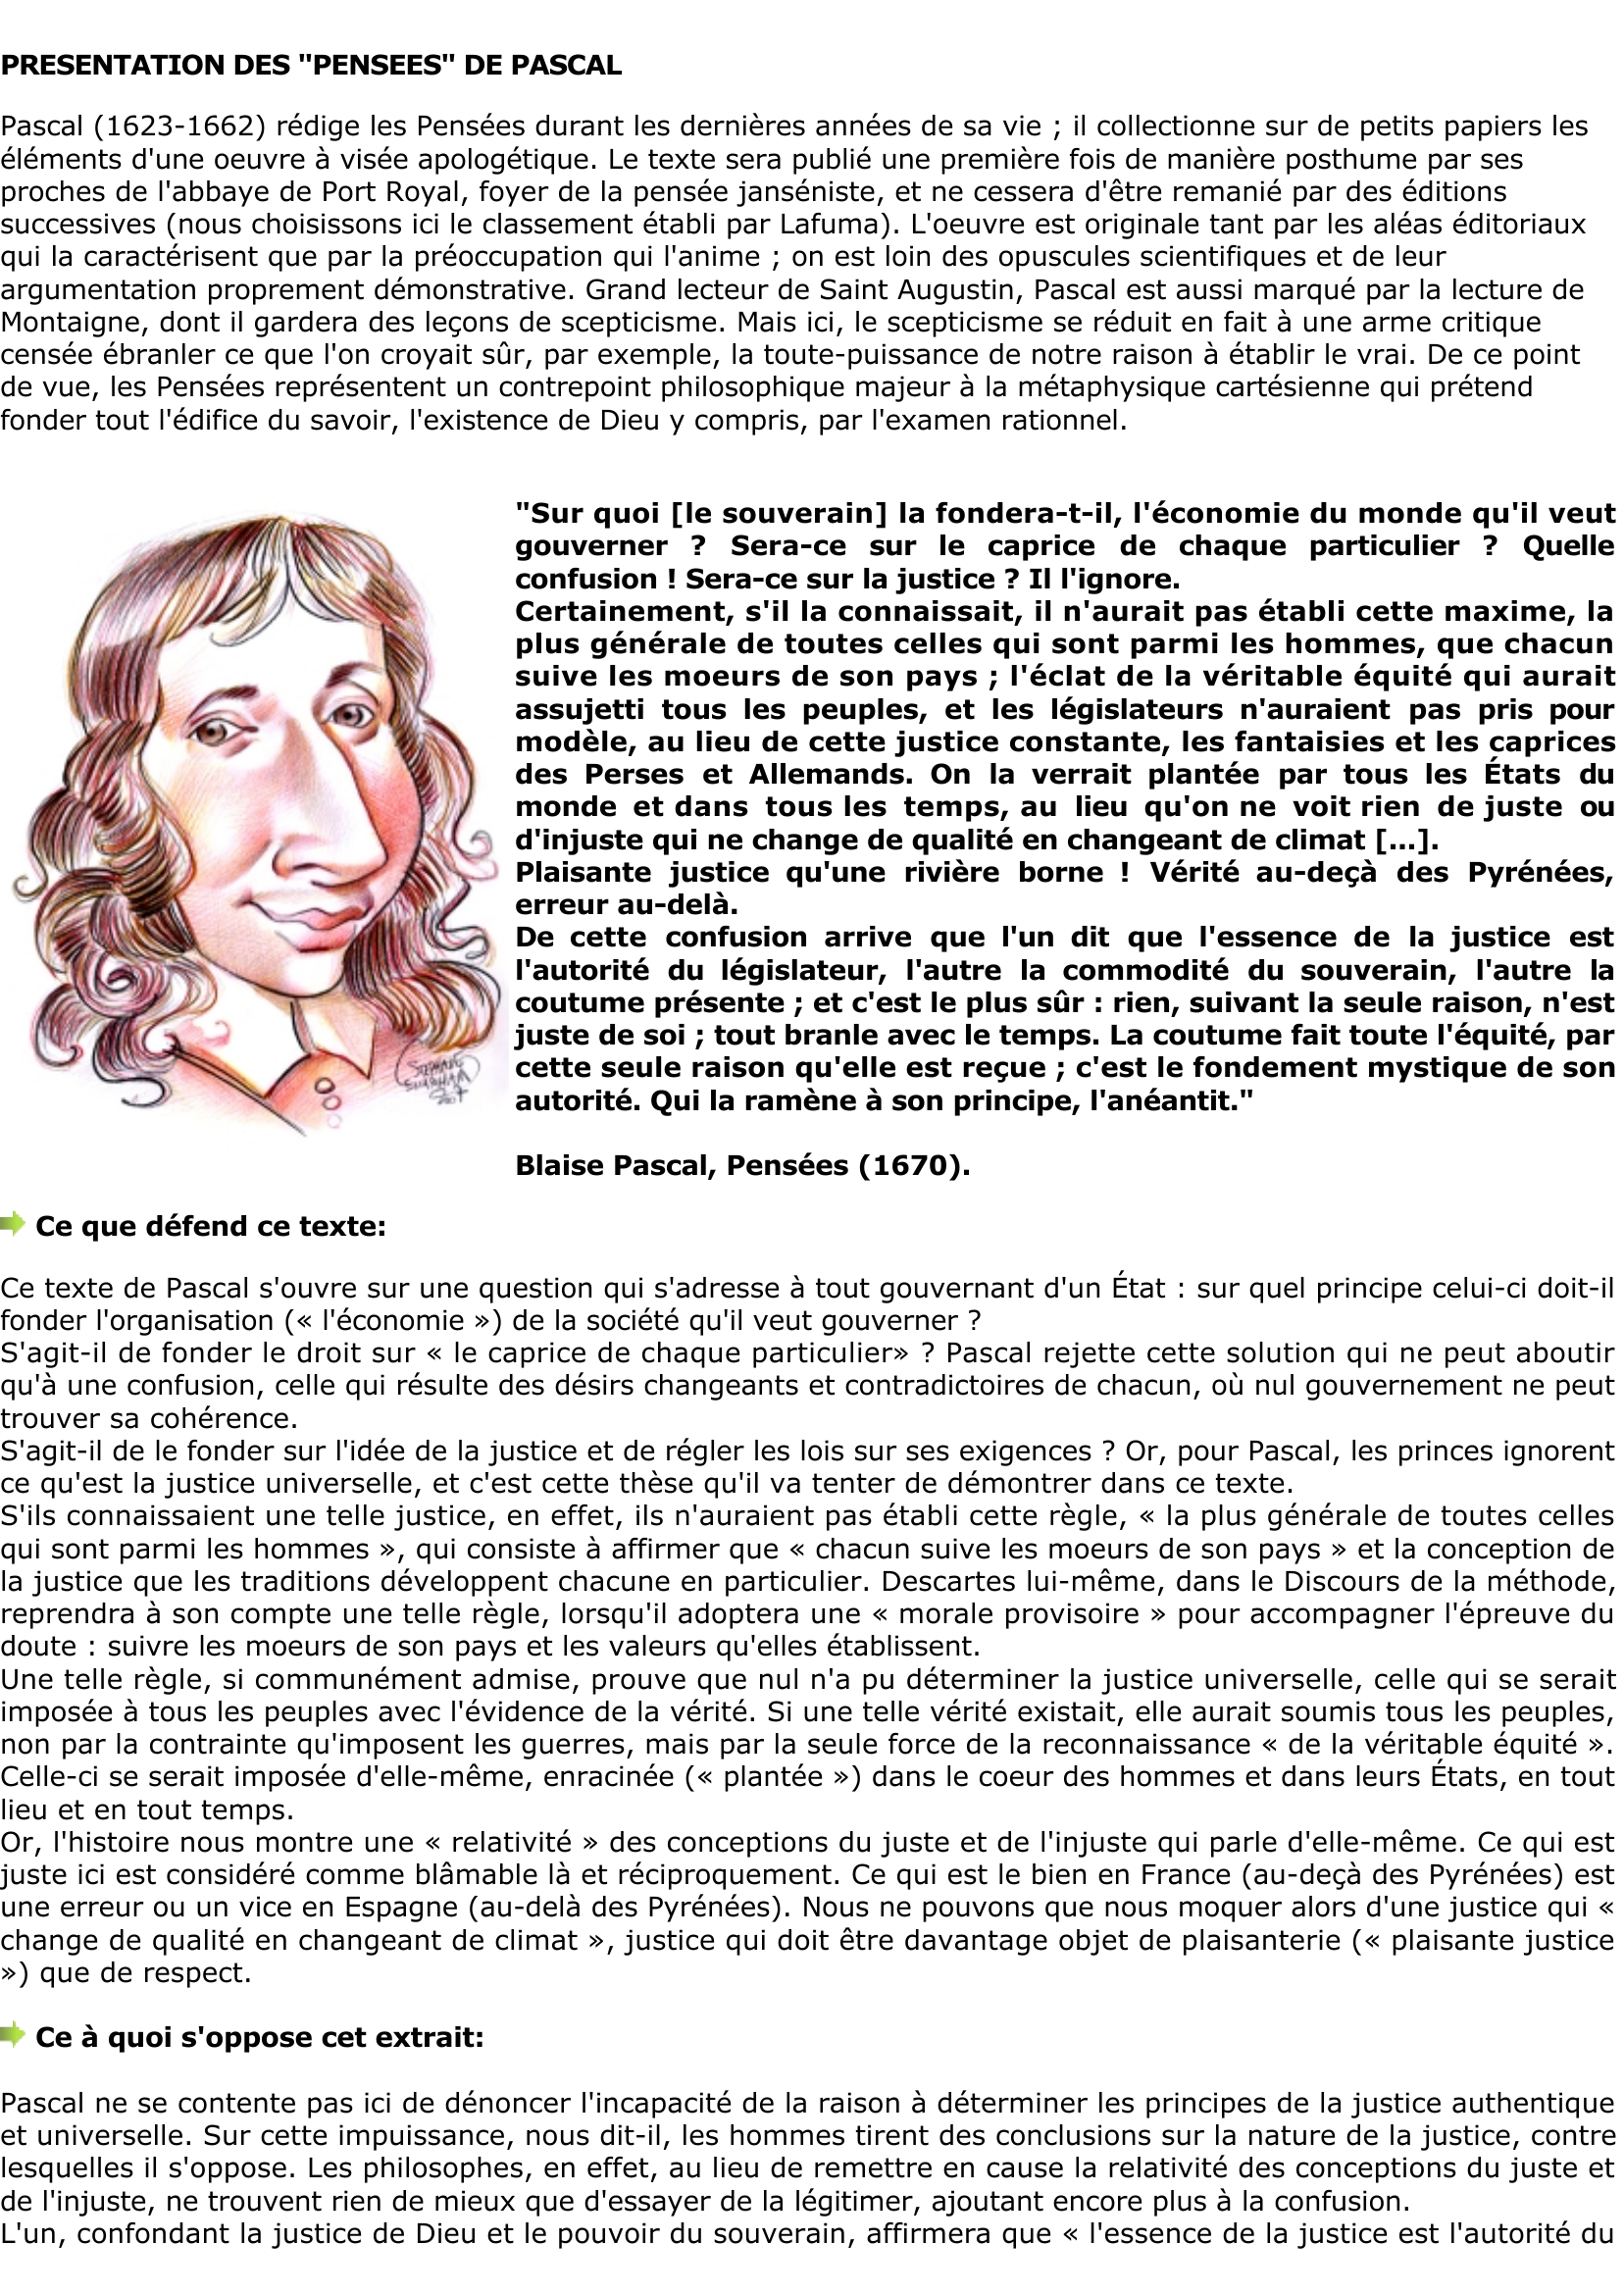 Prévisualisation du document Blaise Pascal: Les critères du juste 

sont-ils relatifs ?